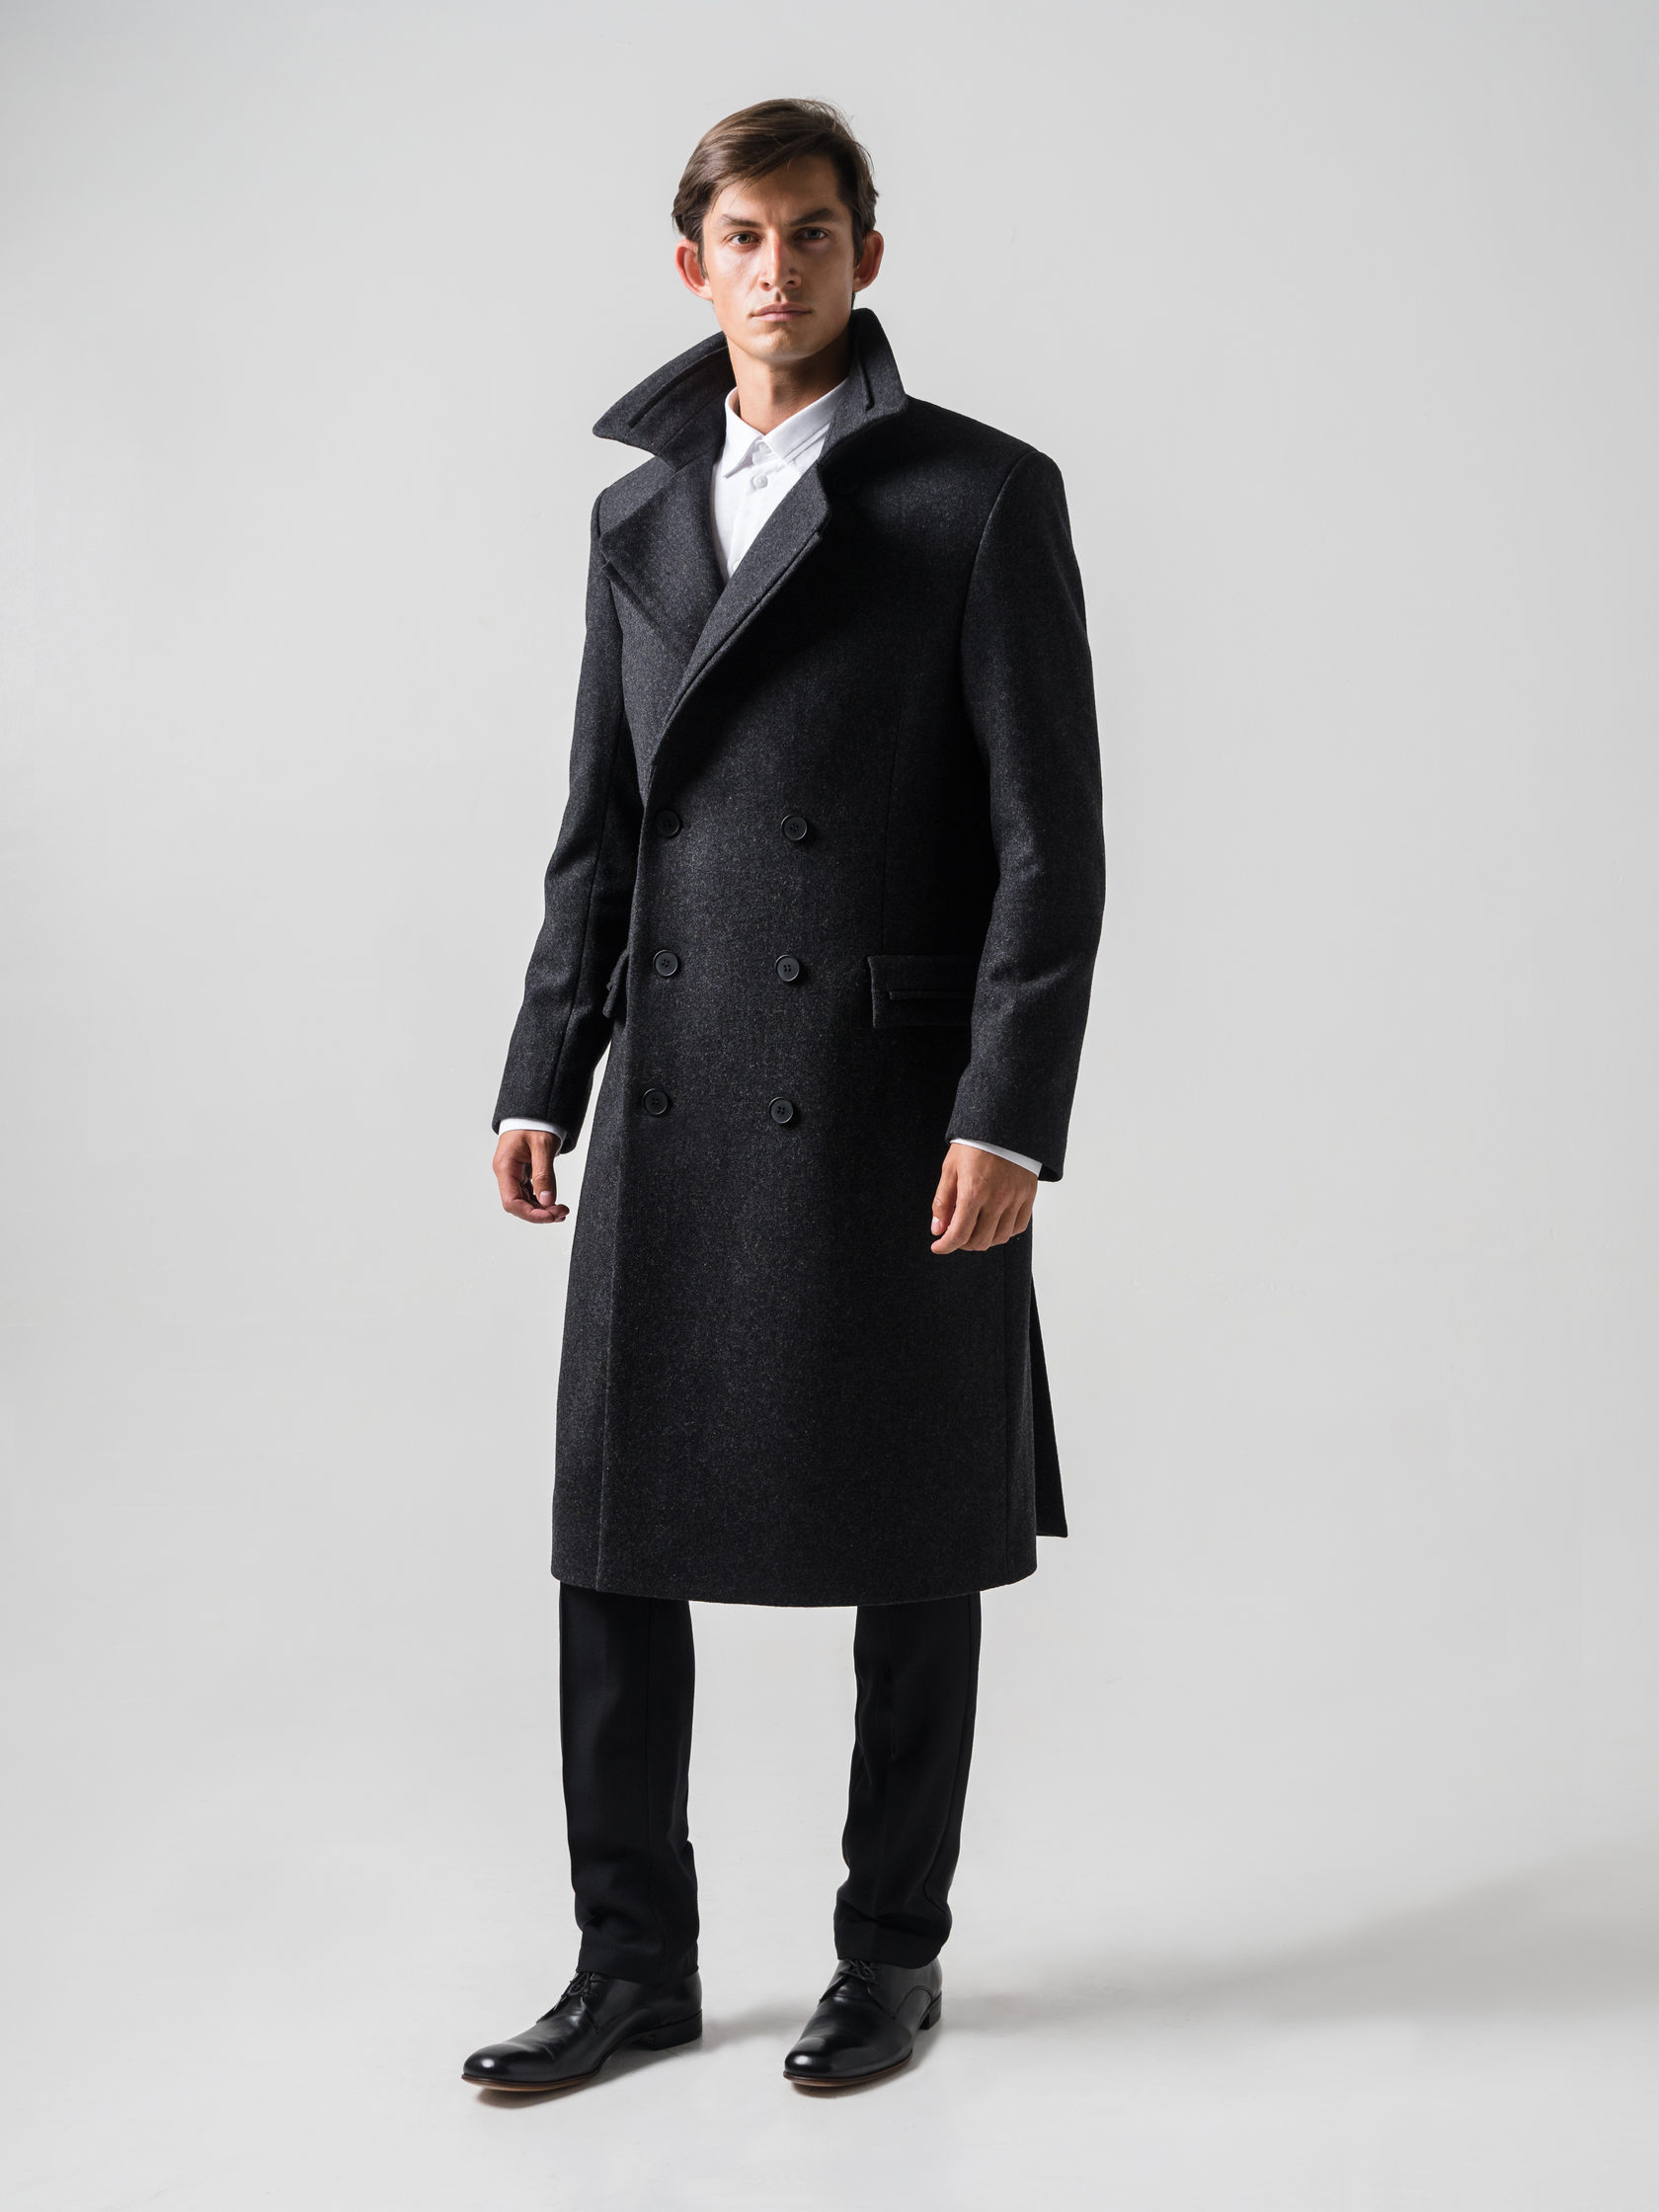 Мужское пальто ниже колена. Пальто мужское Avalon 10622. Camelot Classic пальто мужское. Defacto мужское длинное пальто. Lozenge пальто мужское model 560.